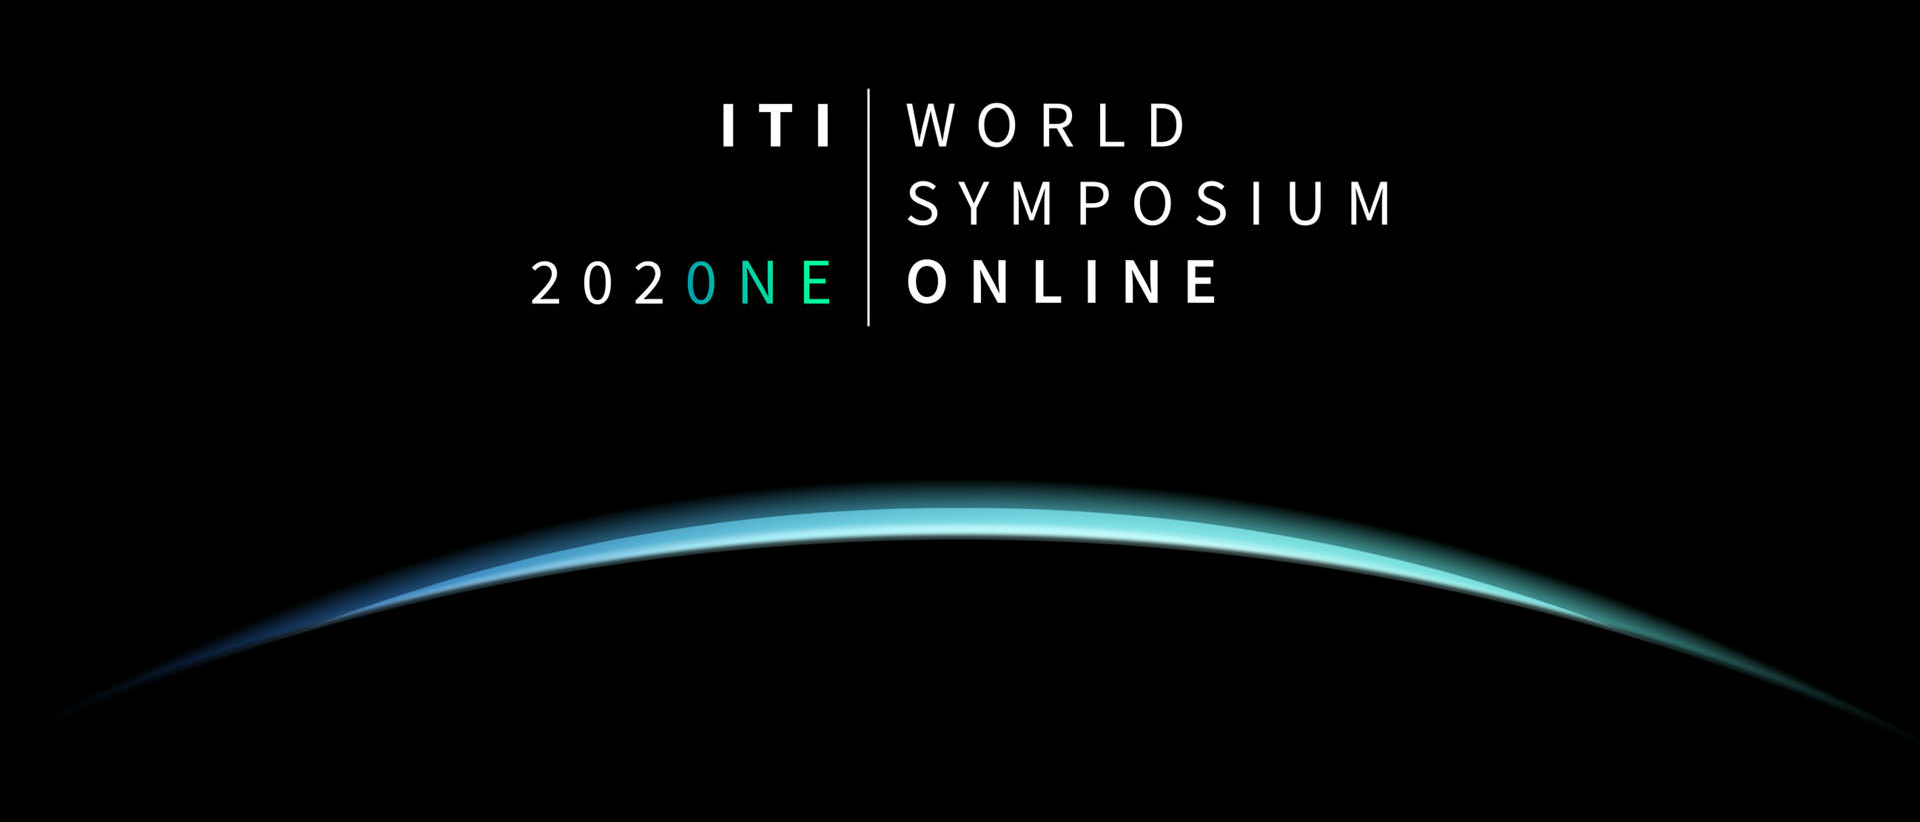 ITI World Symposium 2020NE Keyvisual